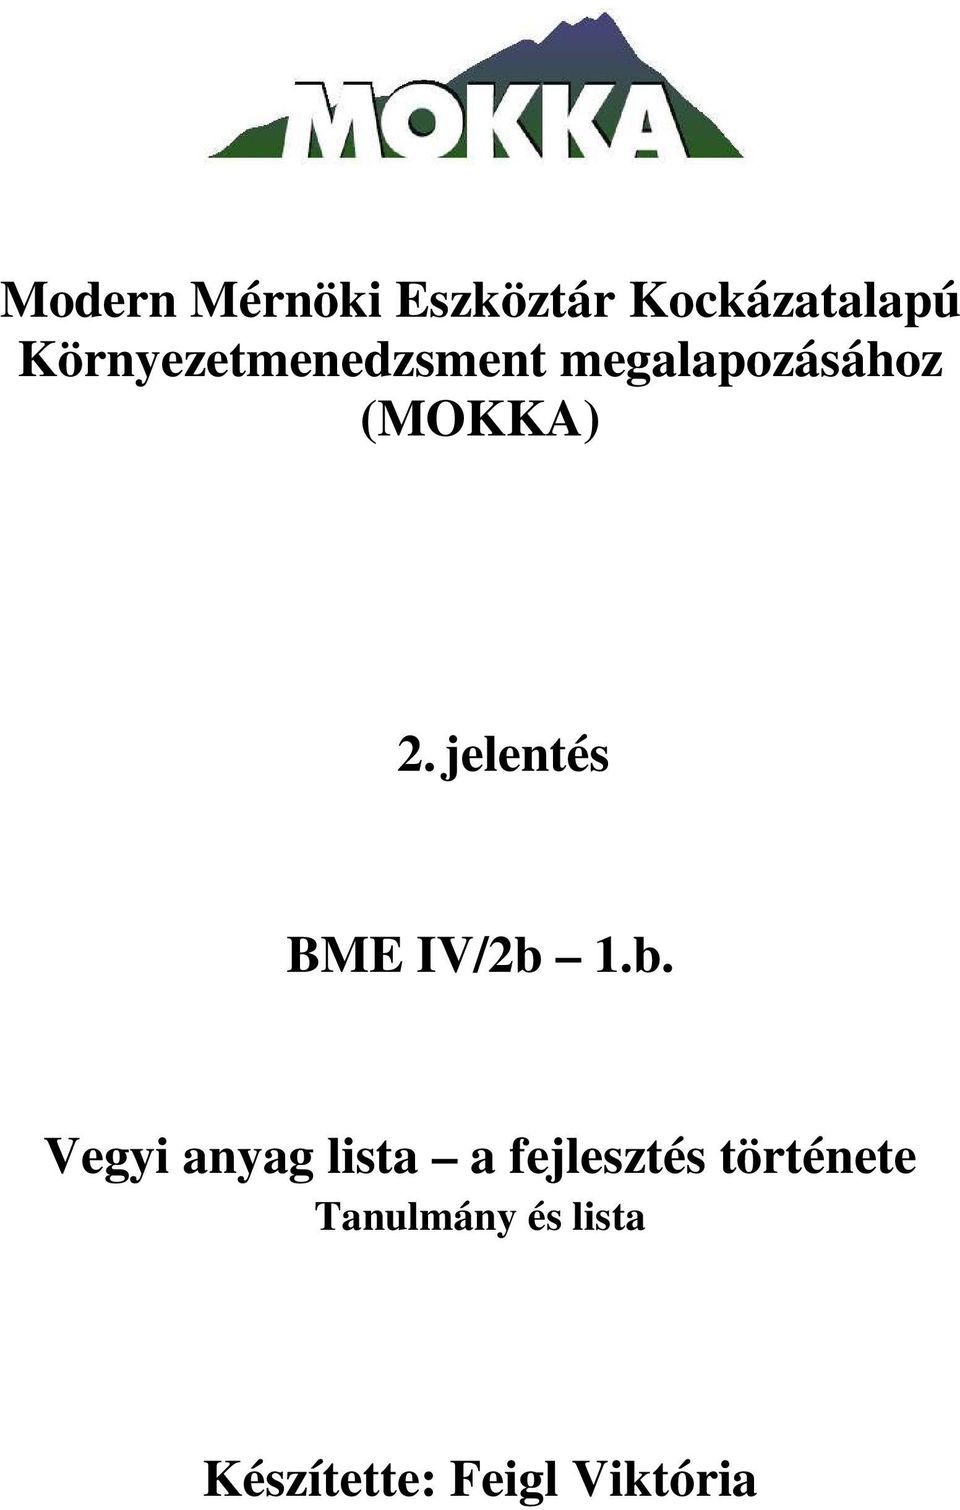 jelentés BME IV/2b 